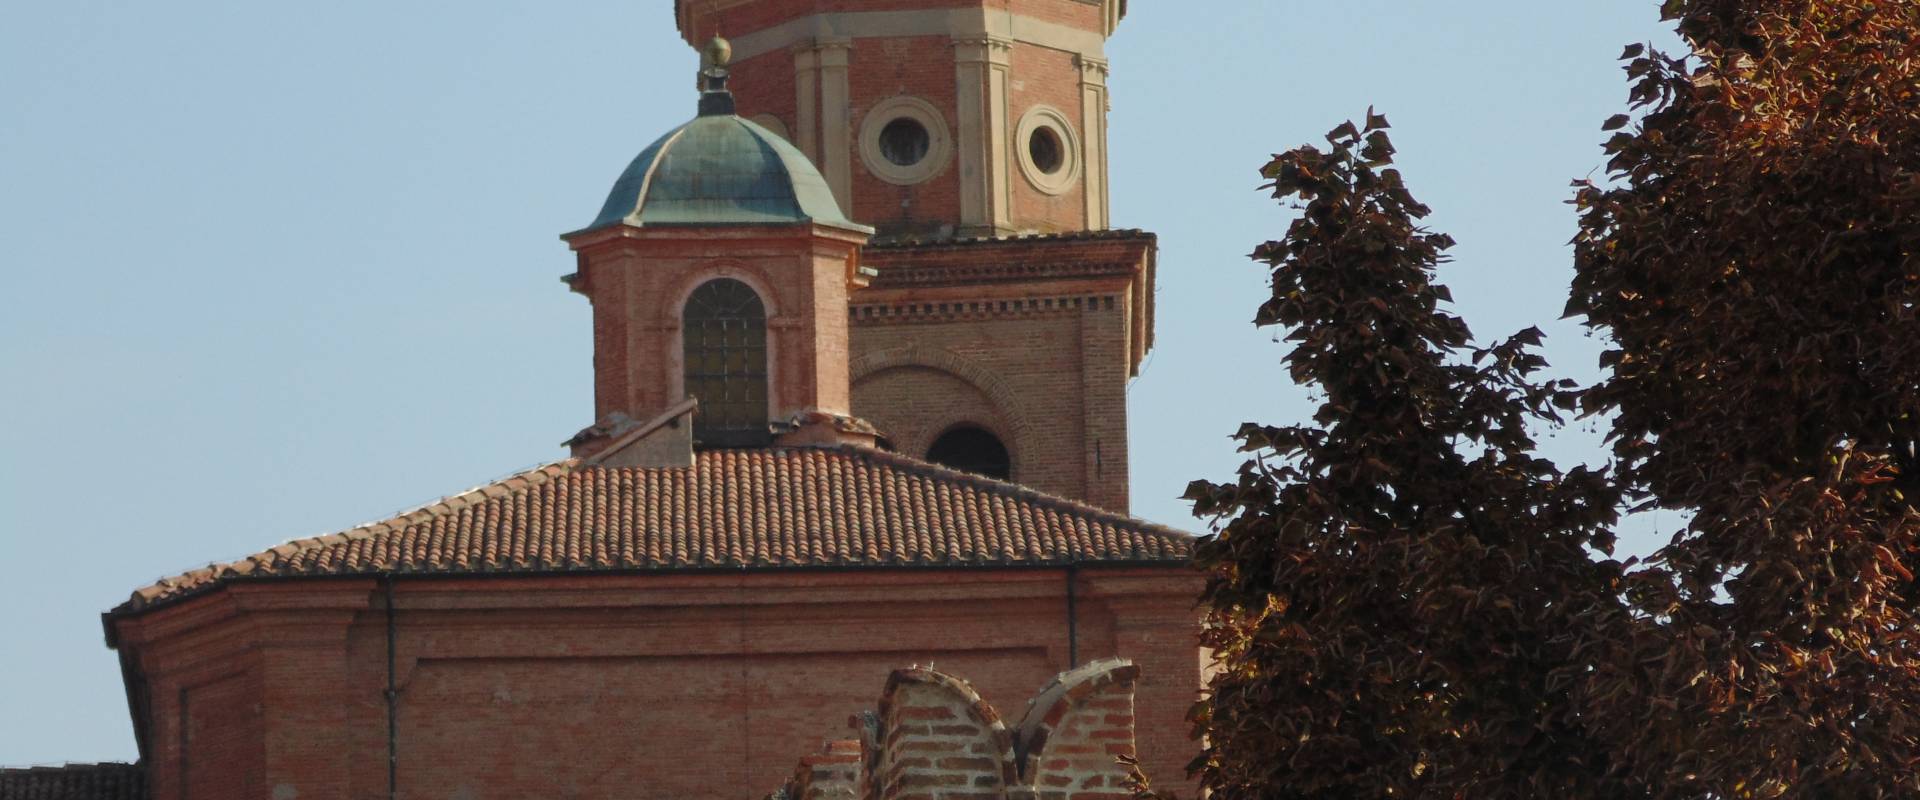 Chiesa cattedrale di San Cassiano (alto) photo by Maurolattuga